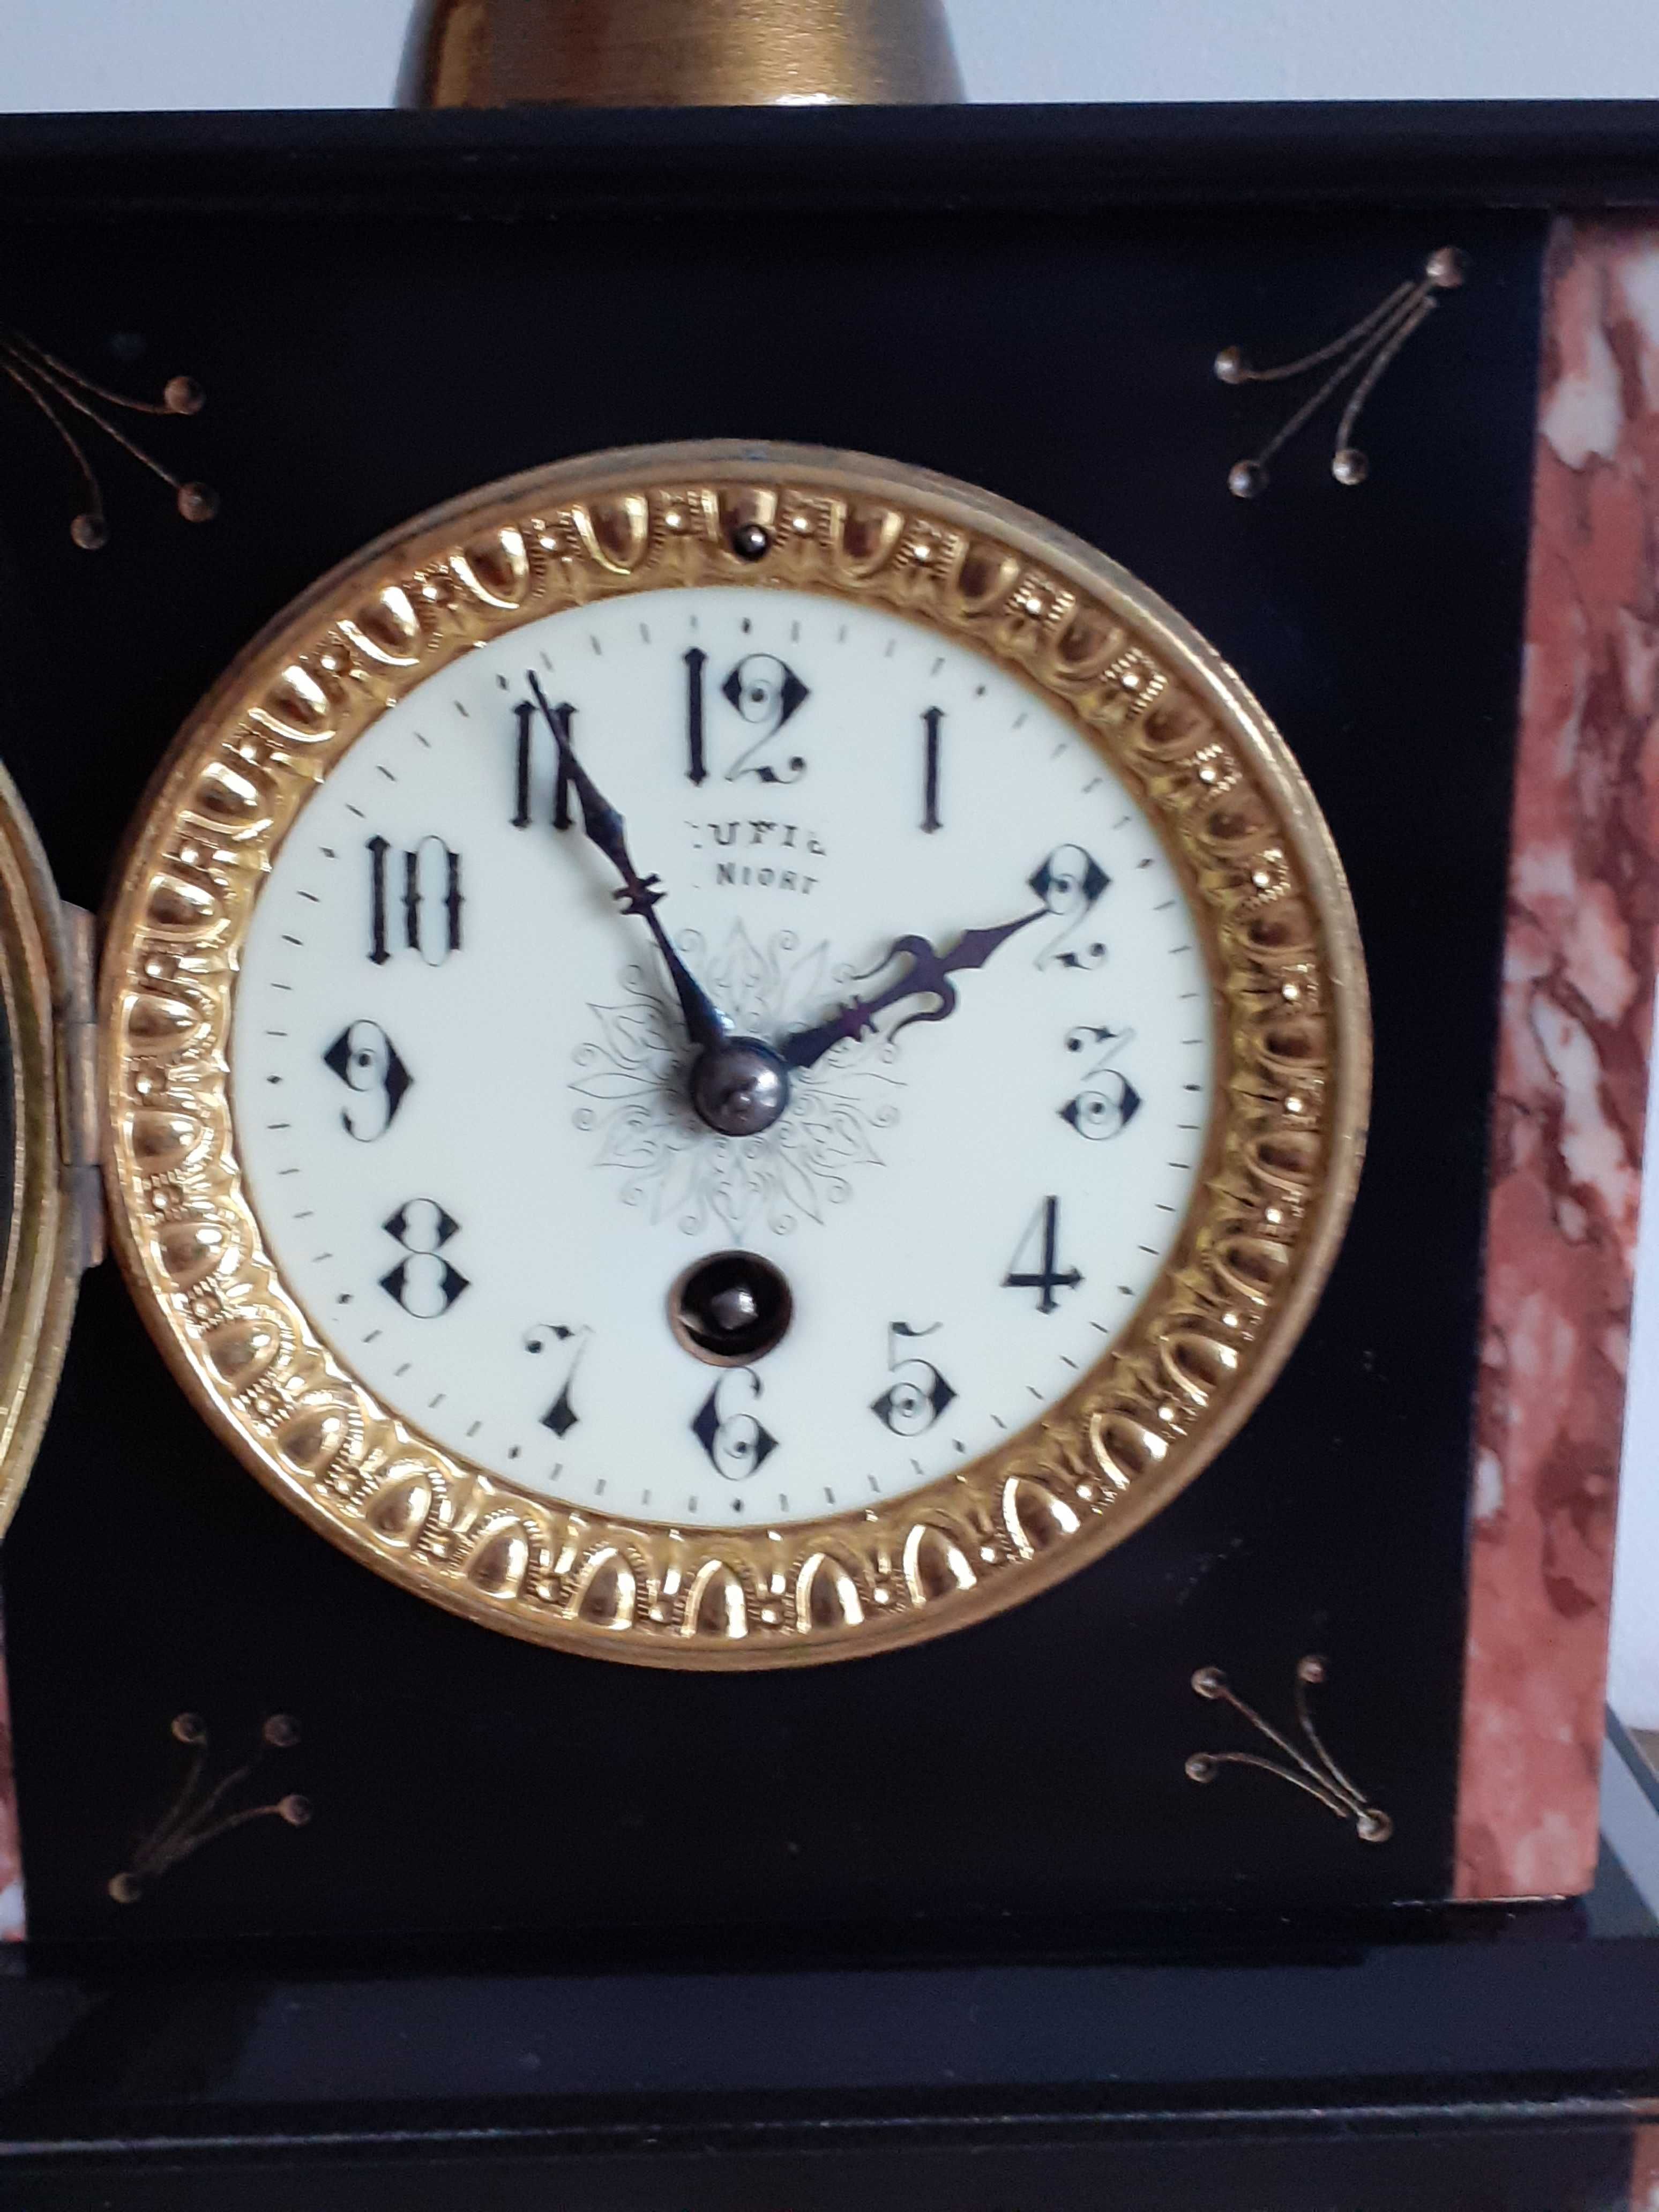 Relógio de mesa francês em mármore